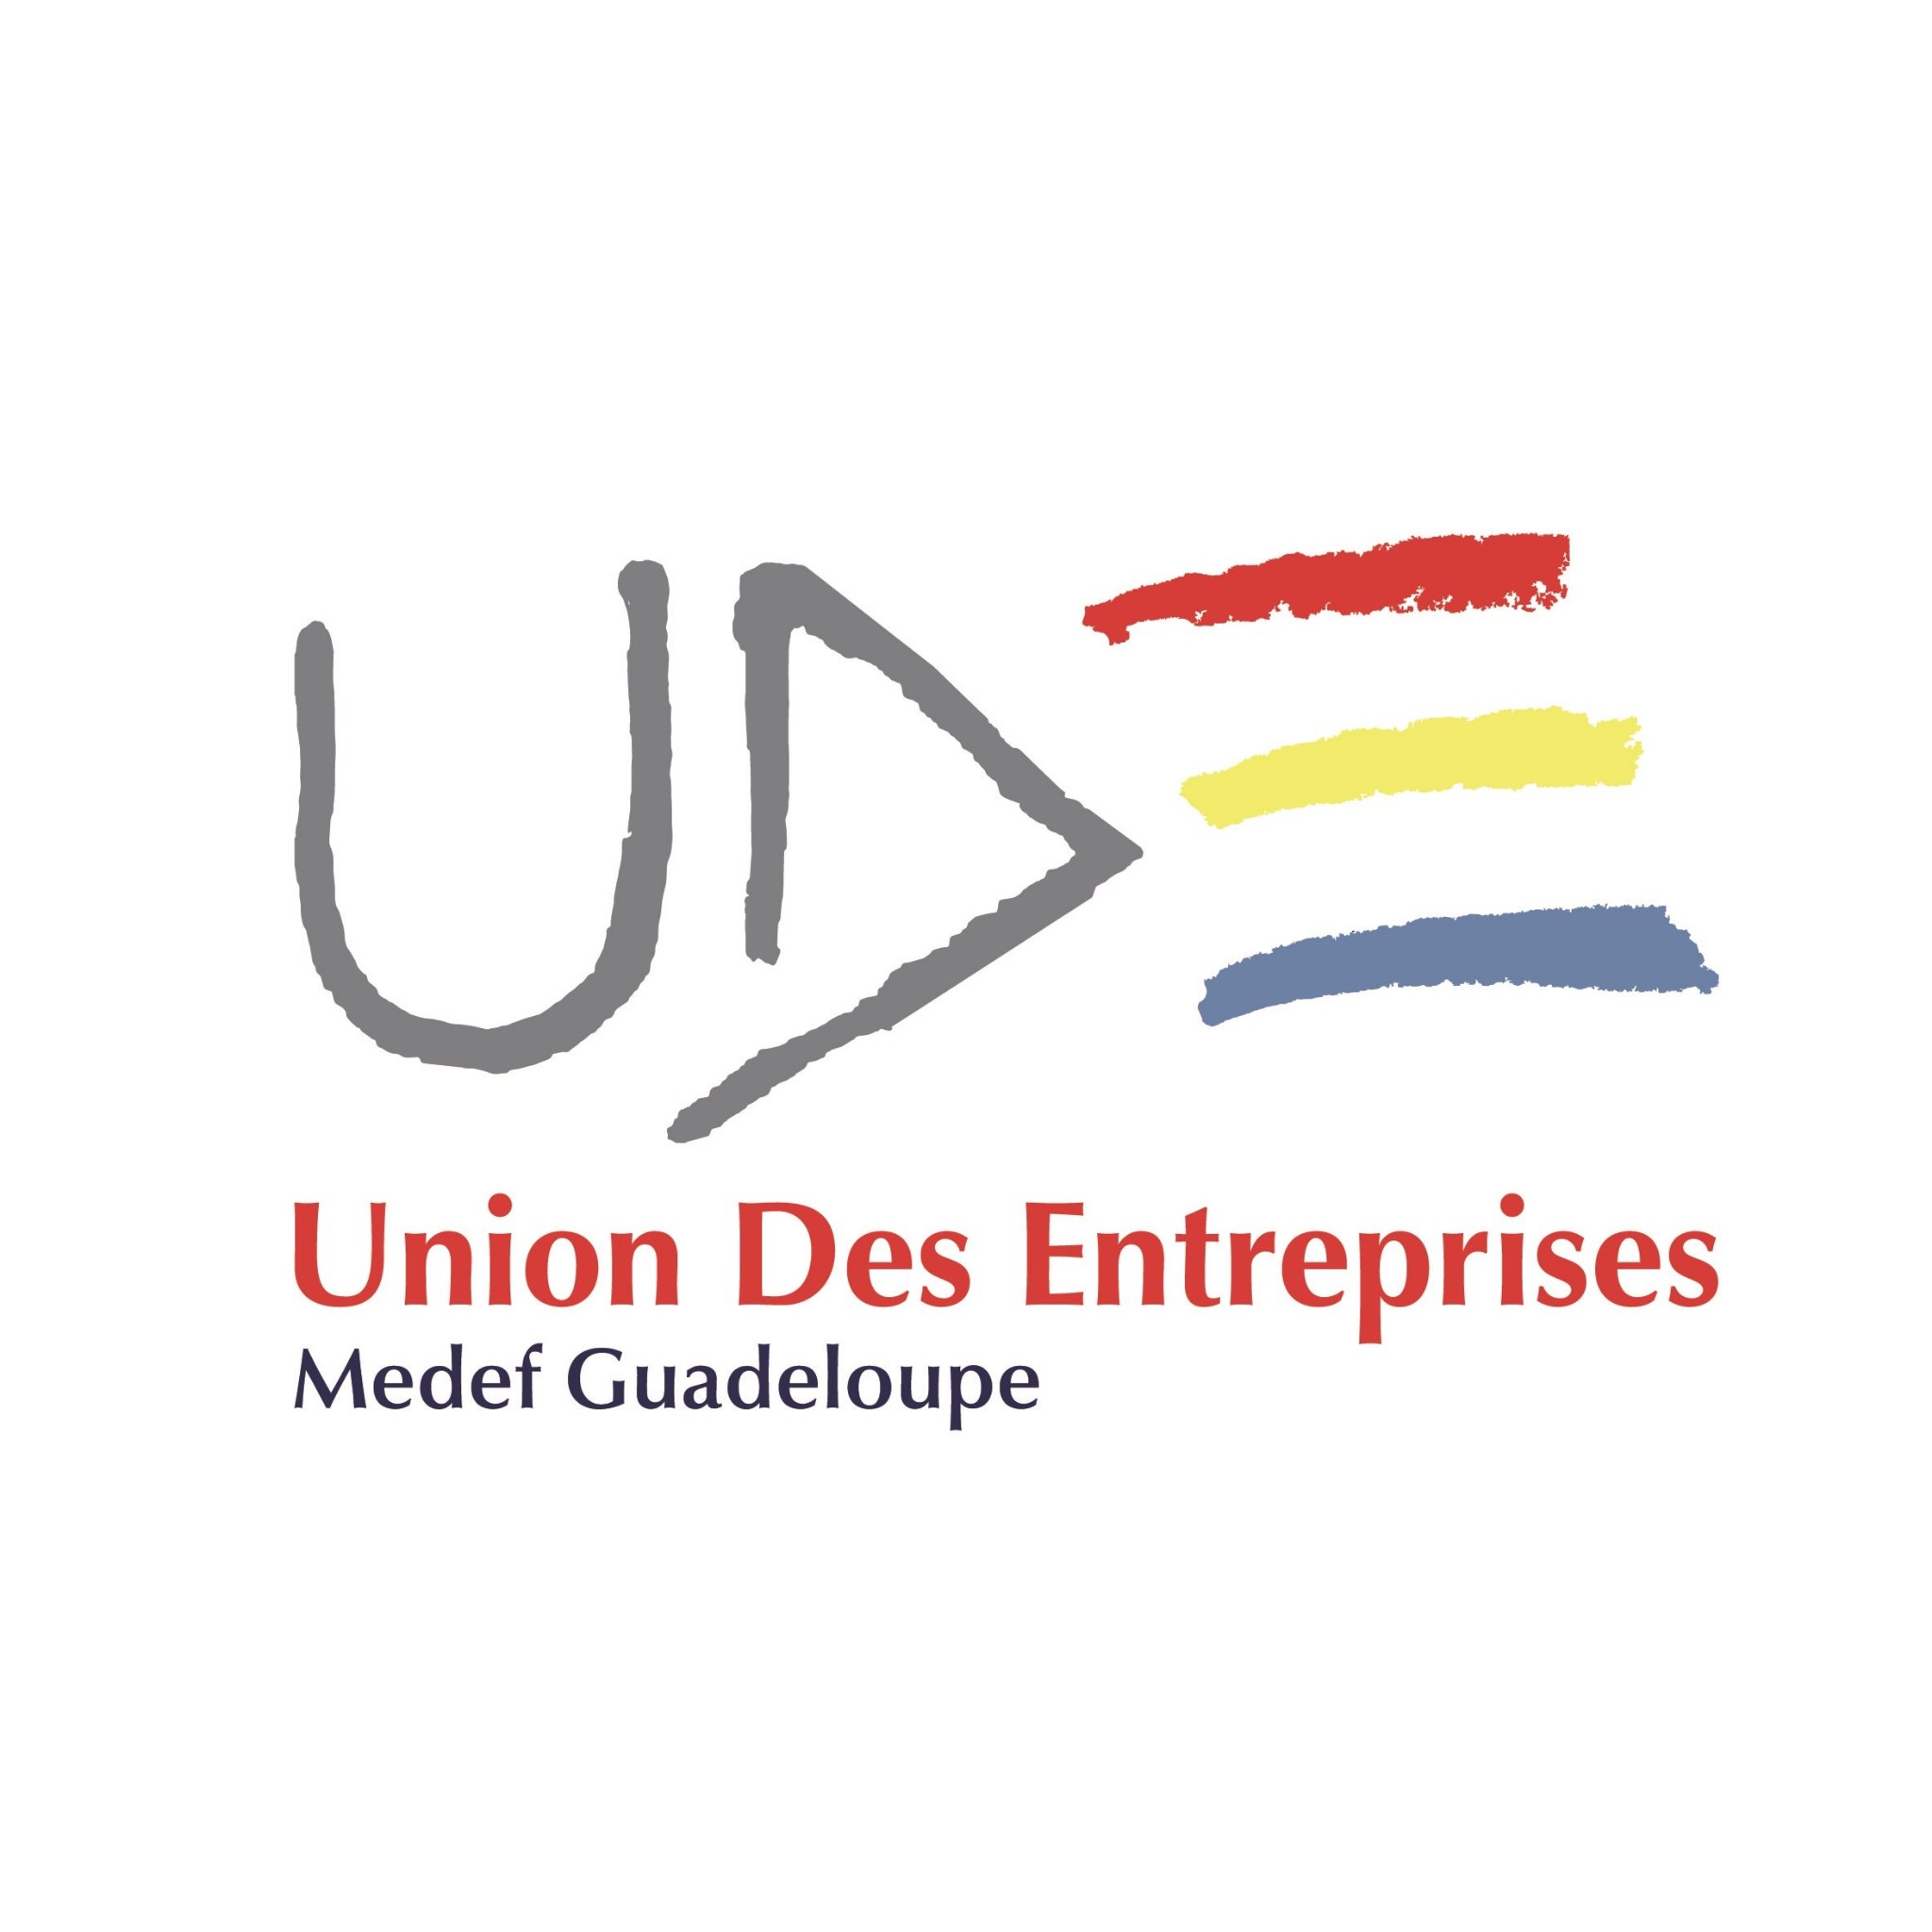     Le MEDEF Guadeloupe demande au ministère des Outre-Mer des mesures spécifiques 

